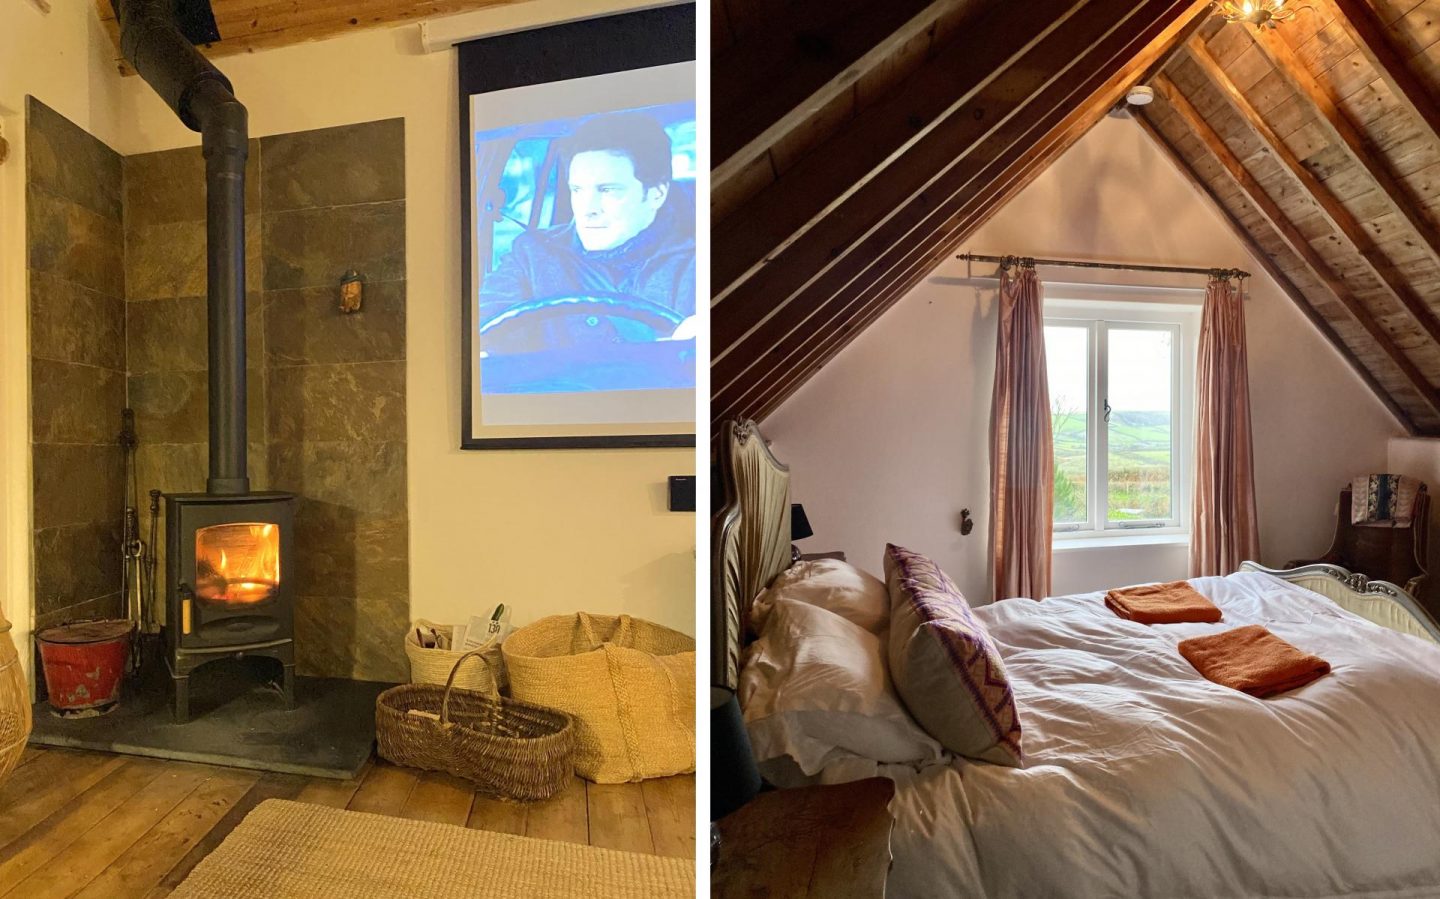 Review: Author's Escape, North Devon | Coastal surf cabin near Saunton, holiday cottage in Devon with secret hut